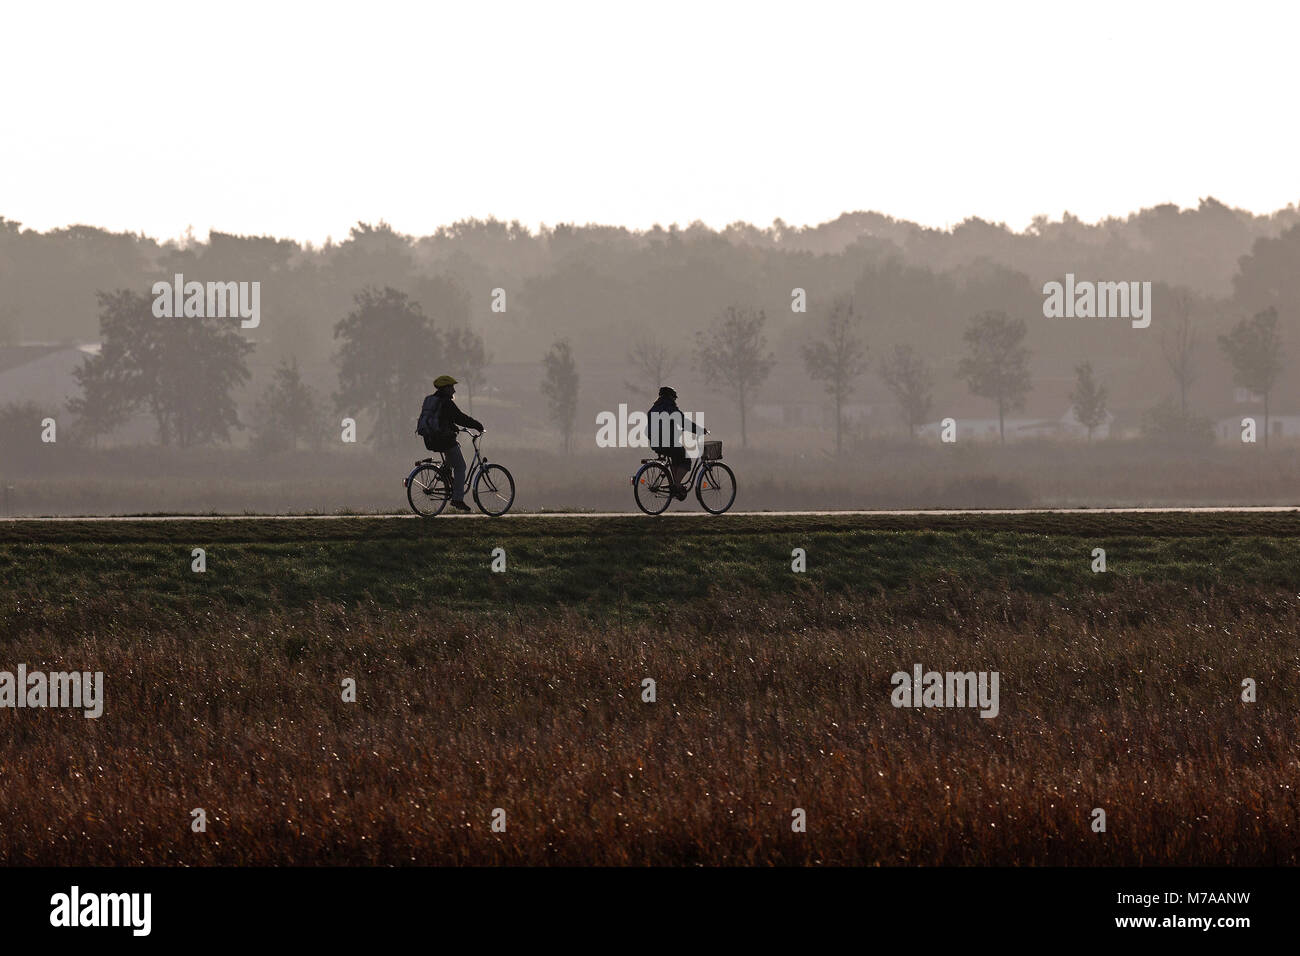 Zwei Radfahrer auf einem Deich, Fischland-Darß-Zingst, morgen Atmosphäre, Nationalpark  Vorpommersche Boddenlandschaft Stockfotografie - Alamy